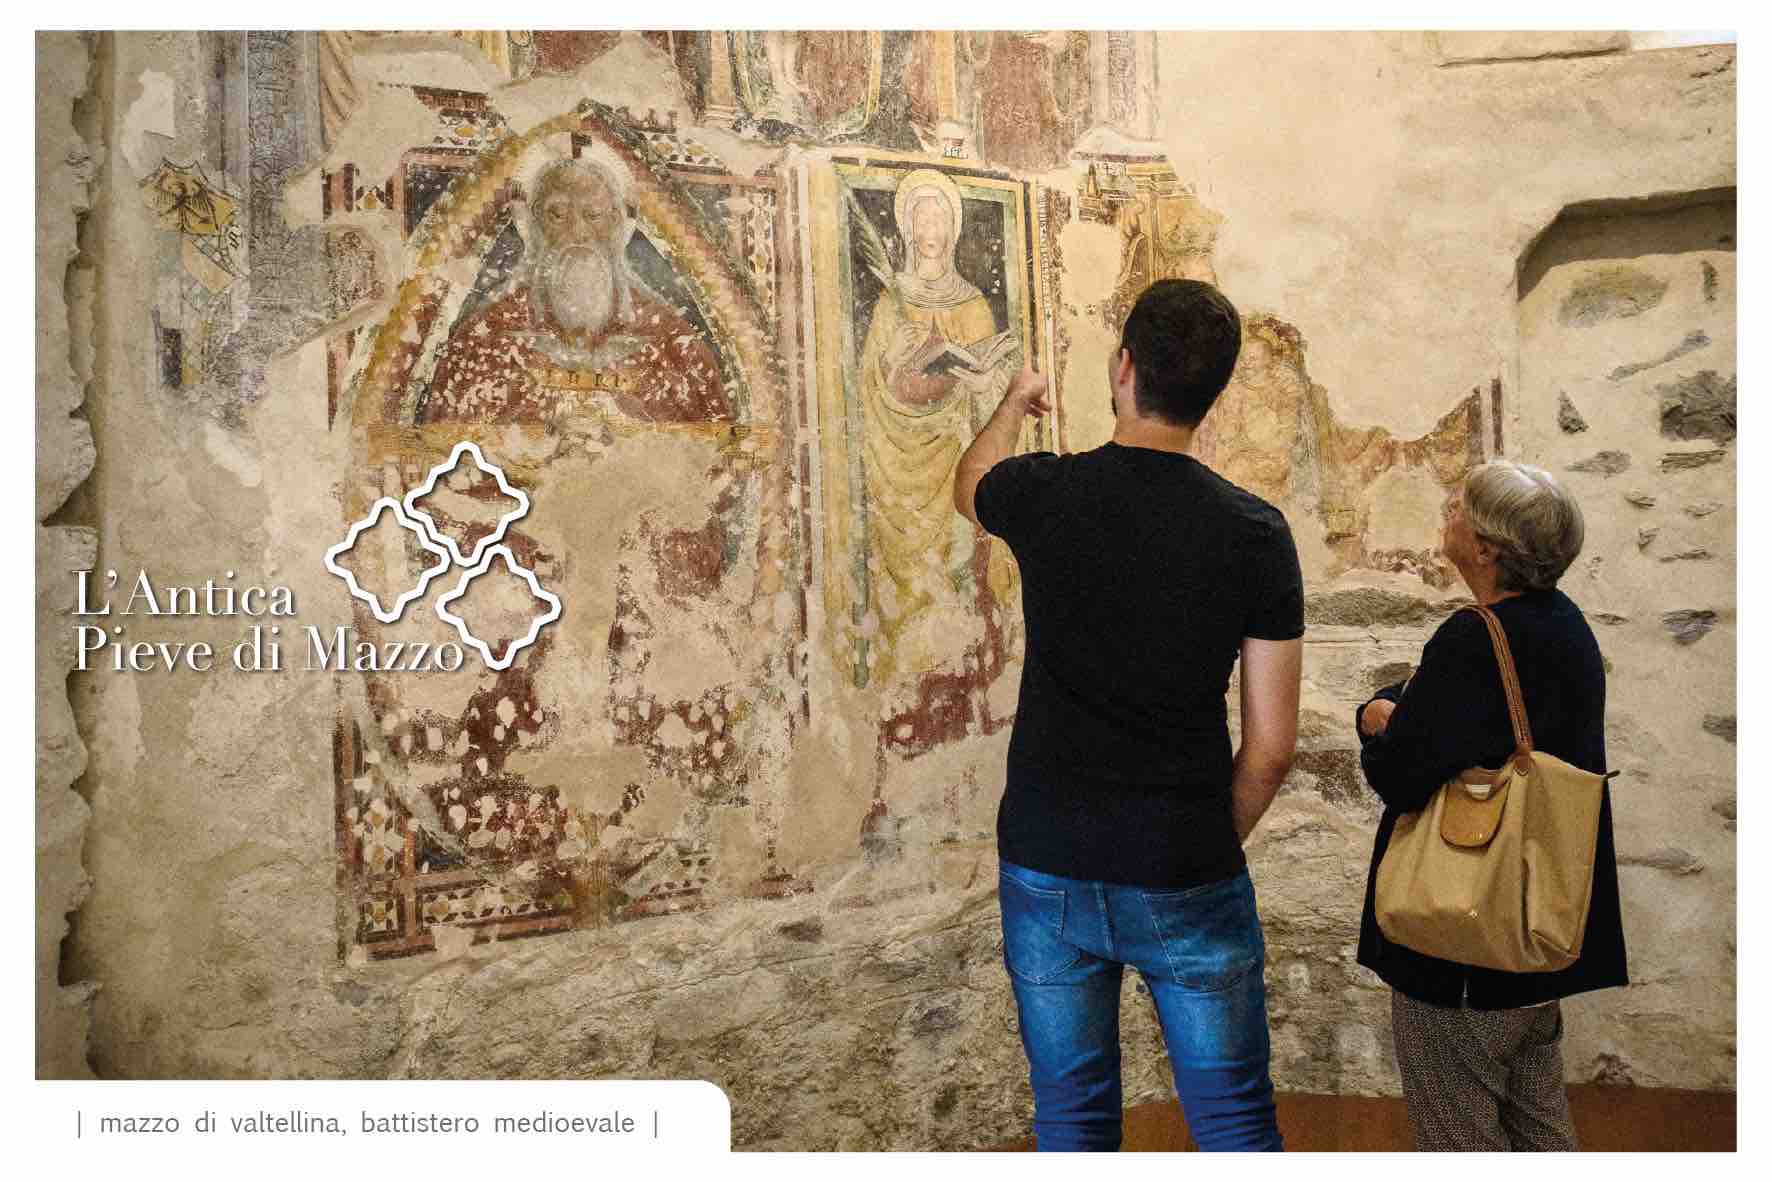 CULTURA - Tirano, L'Antica Pieve di Mazzo: un mosaico di arte, storia e fede